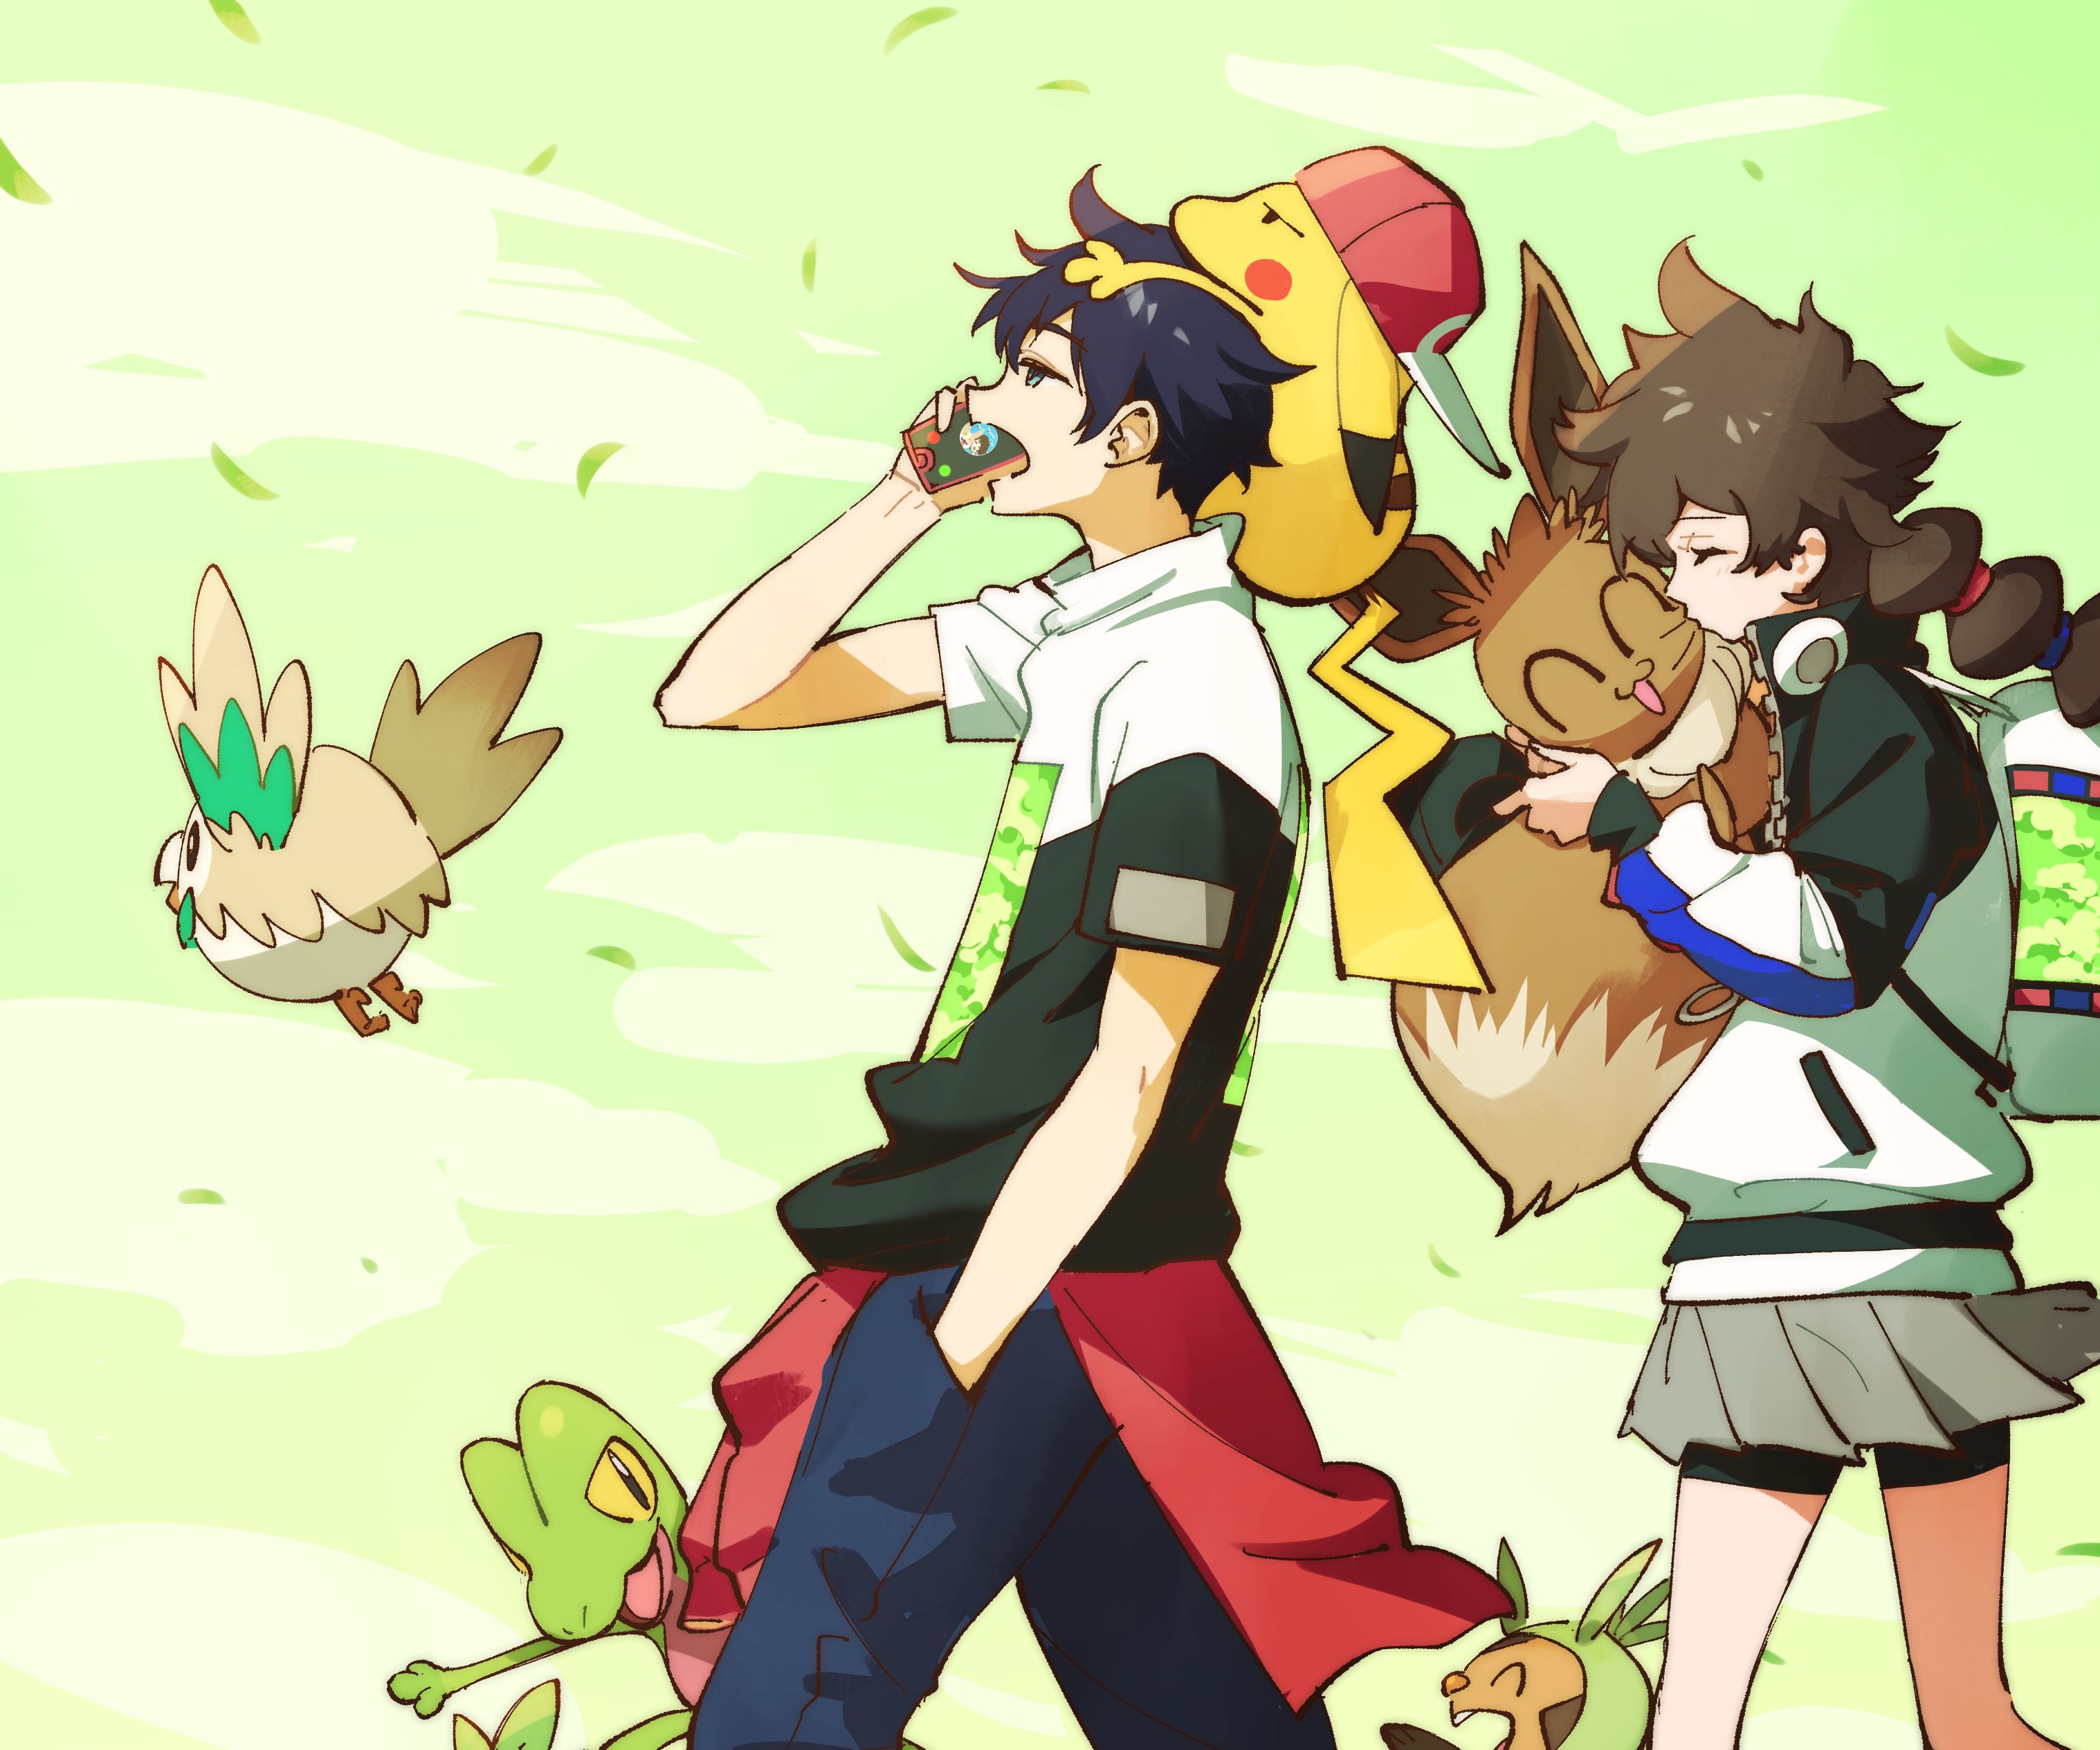 Descarga gratuita de fondo de pantalla para móvil de Pokémon, Animado, Pikachu, Eevee (Pokémon), Treecko (Pokémon), Rowlet (Pokémon).